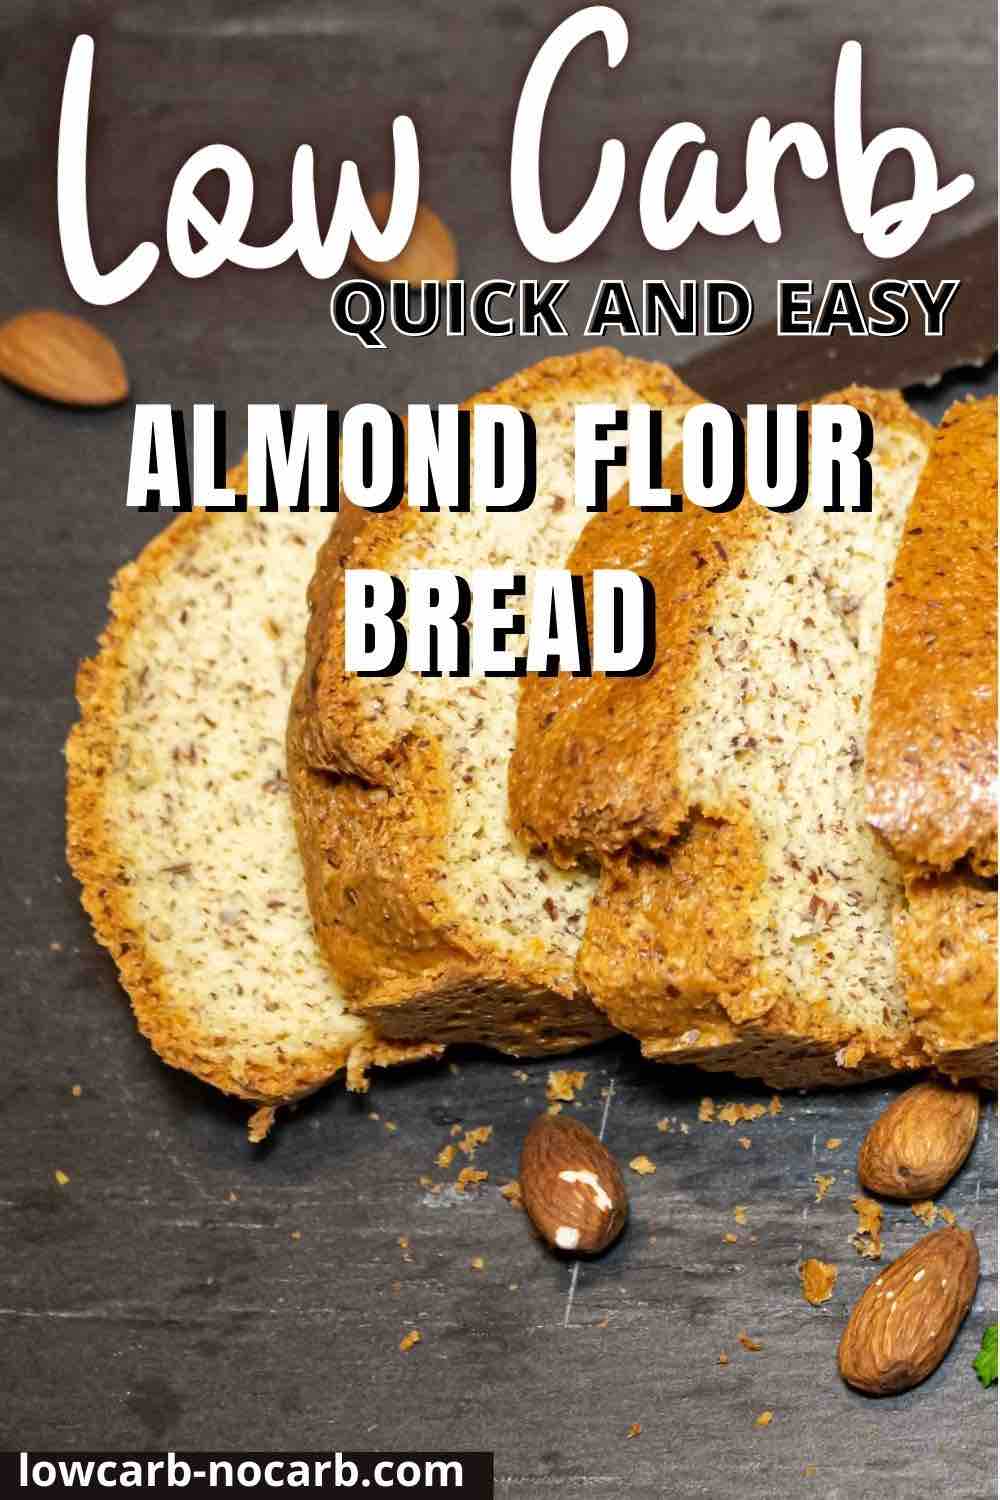 Almond Flour Bread Keto slices on a black board.